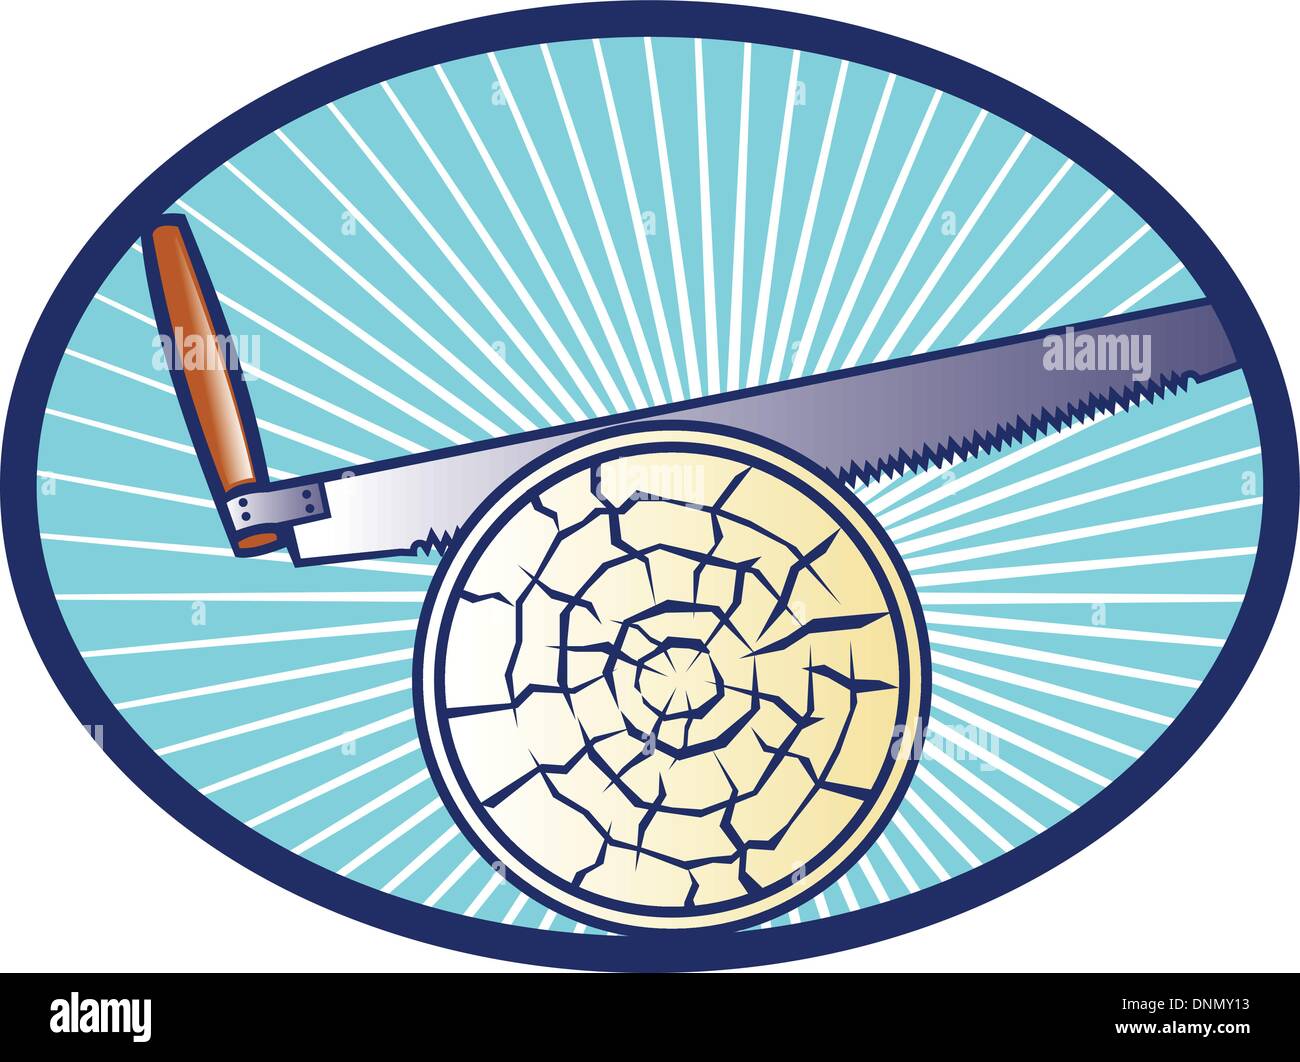 Retro illustration d'un cross-cut scie à main journal de coupe de bois situé à l'intérieur de l'ellipse ovale avec la solarisation. Illustration de Vecteur